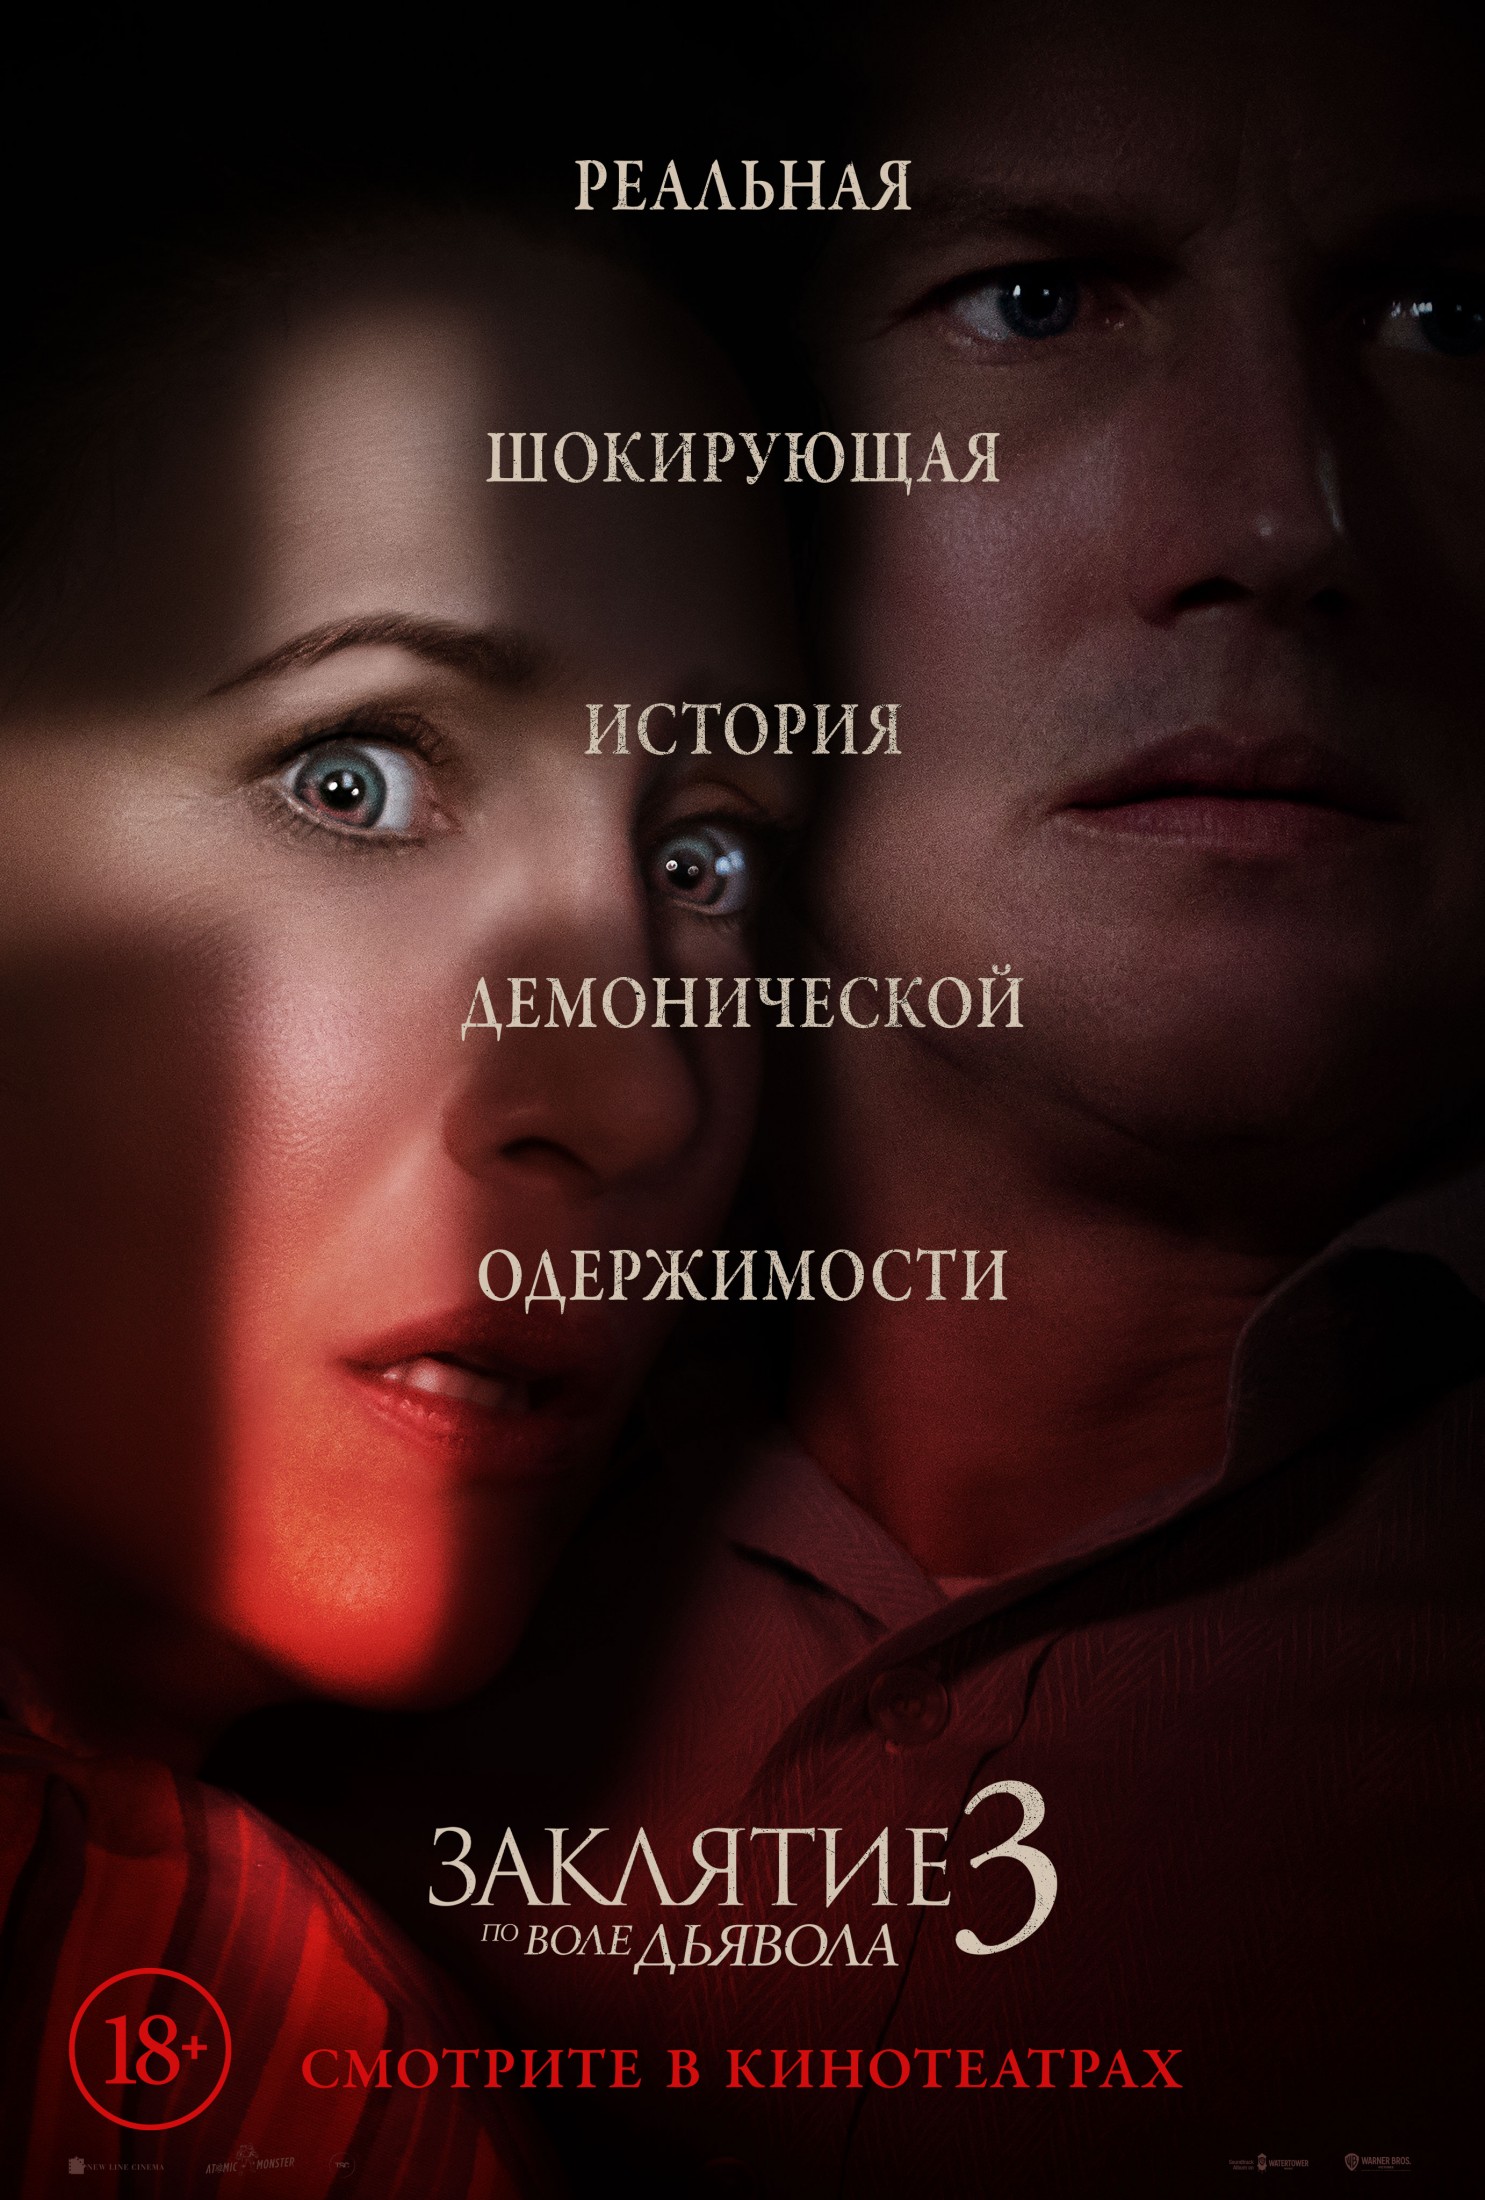 А вот и демонический русский постер к фильму "Заклятие 3: По воле дьявола"